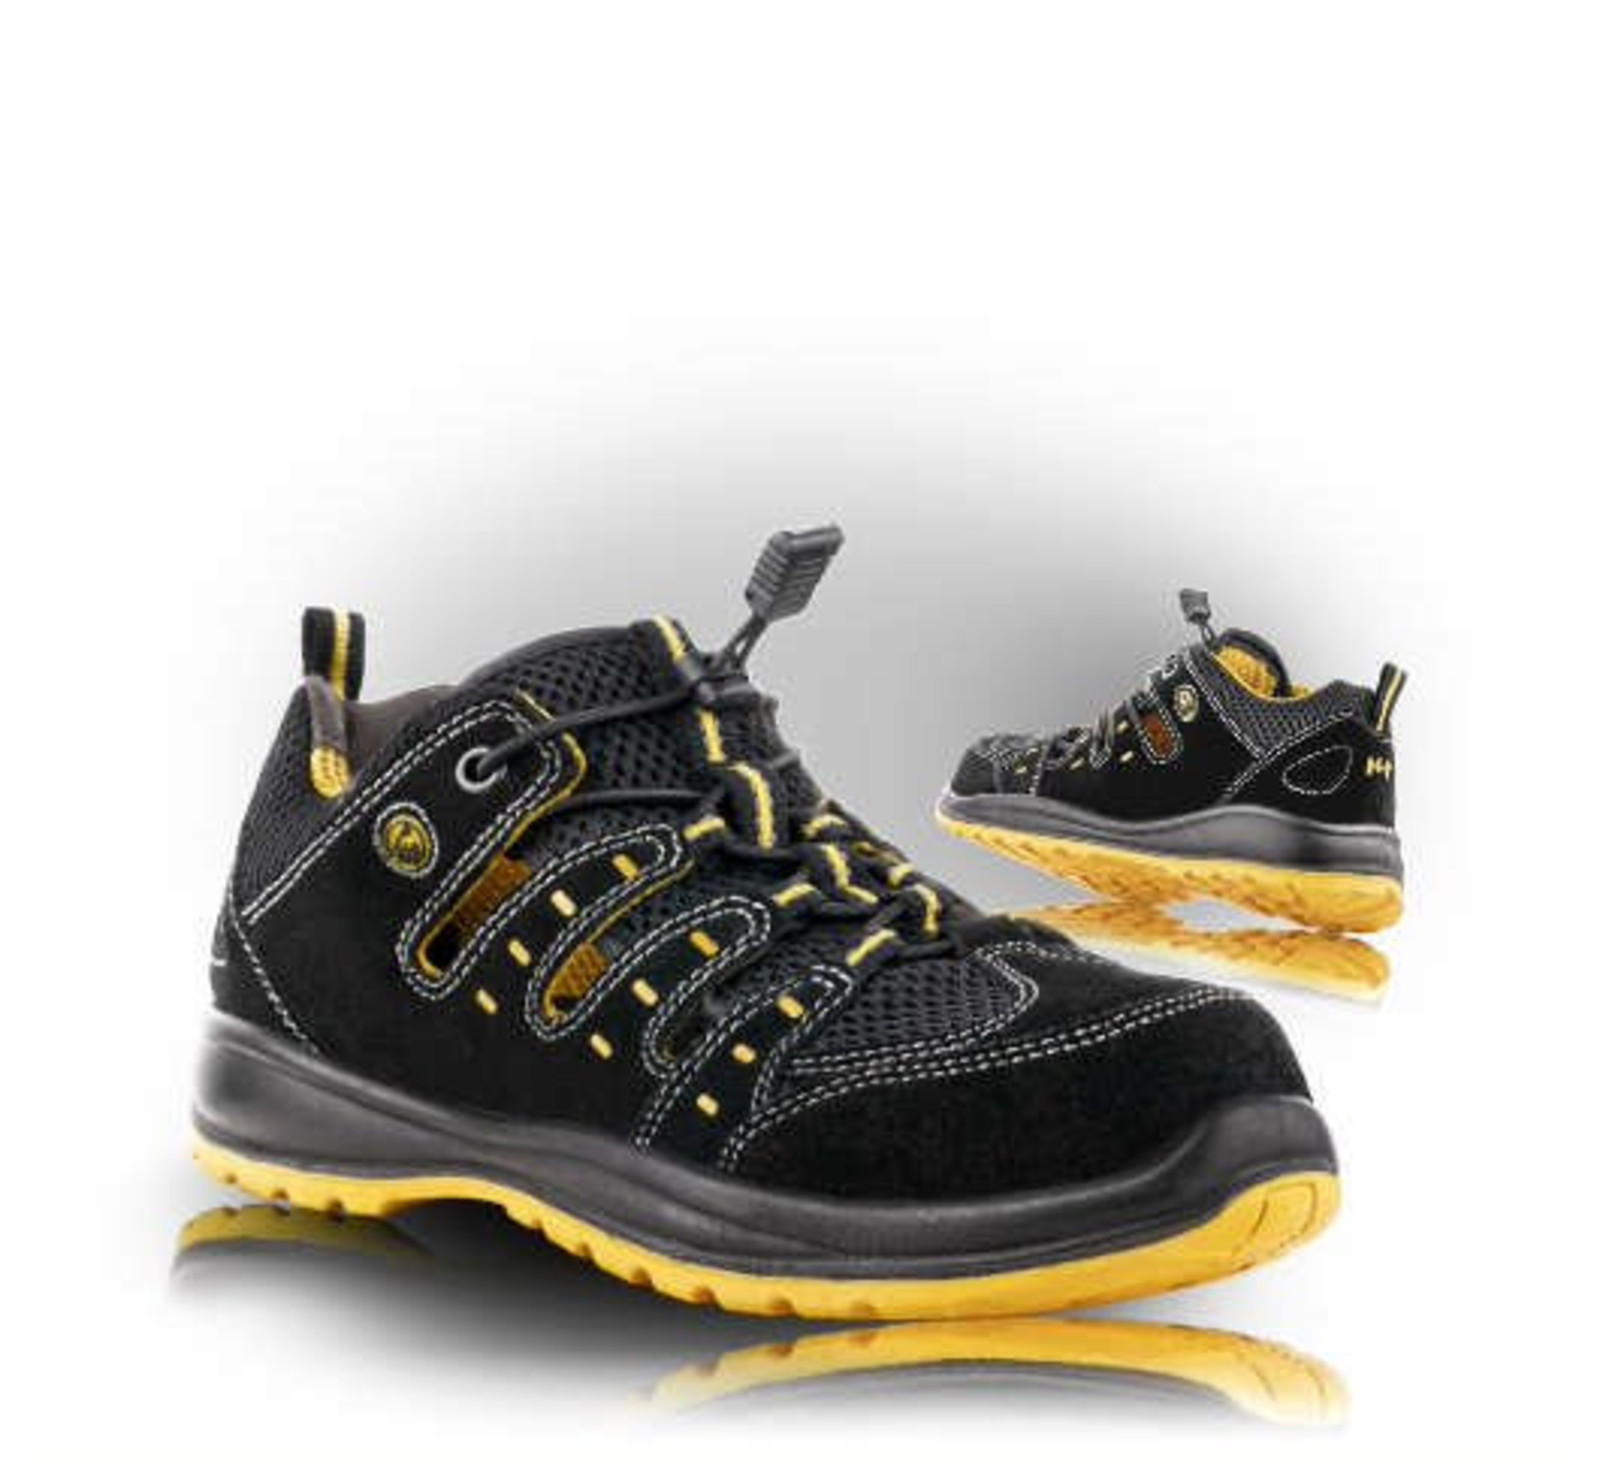 Bezpečnostné sandále Memphis S1 ESD - veľkosť: 42, farba: čierna/žltá